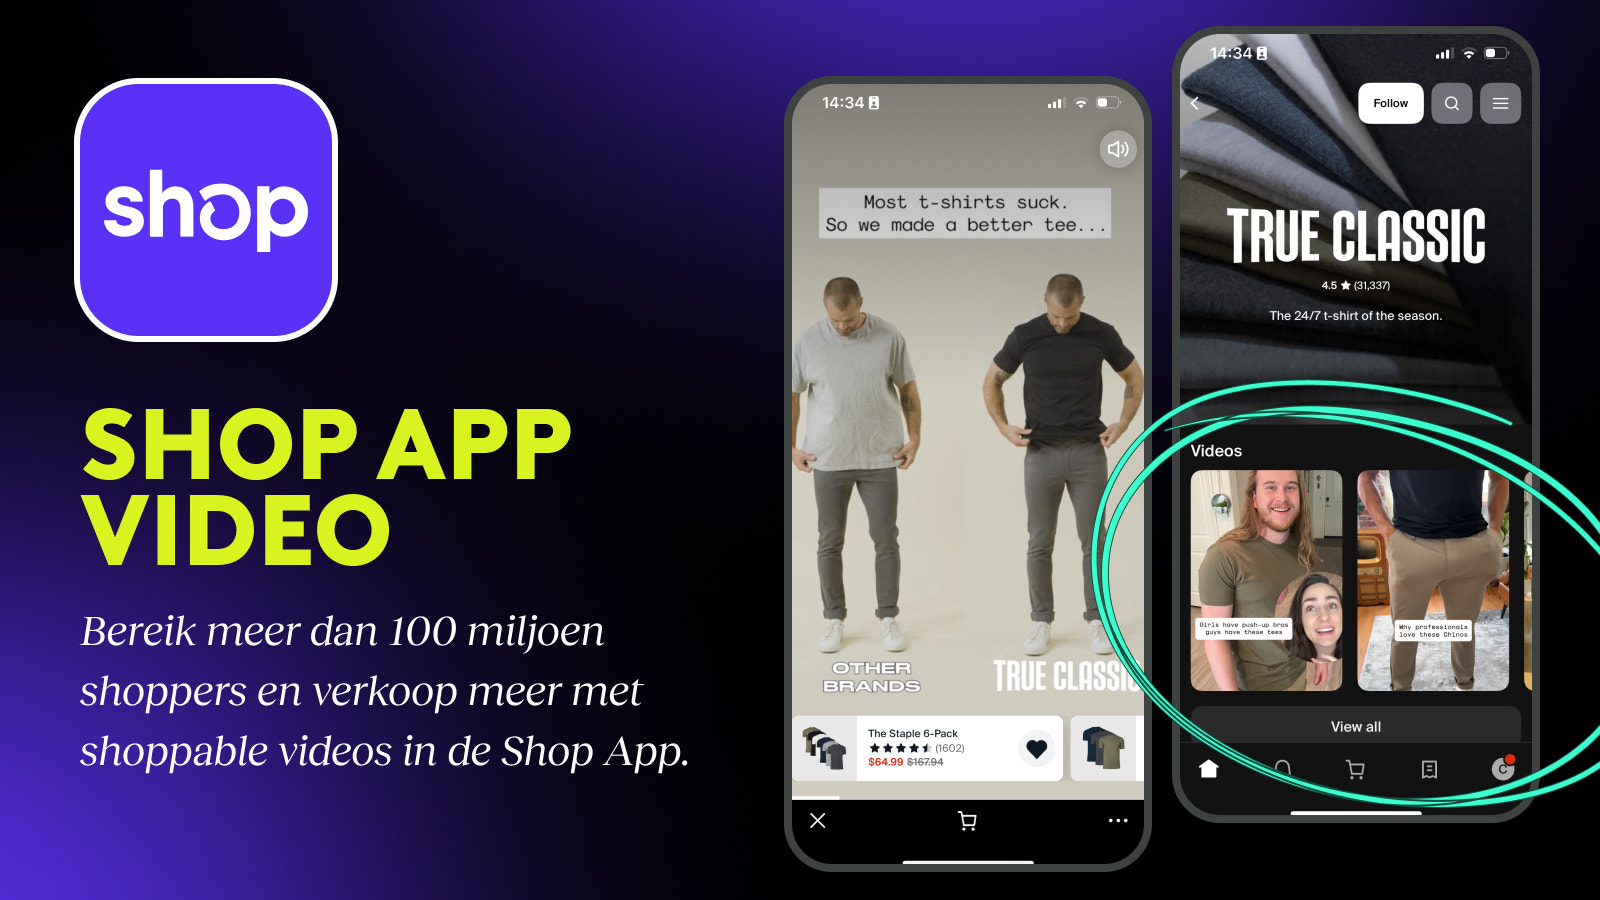 Shop app video, Shop minis, shoppable video, mobiele app video